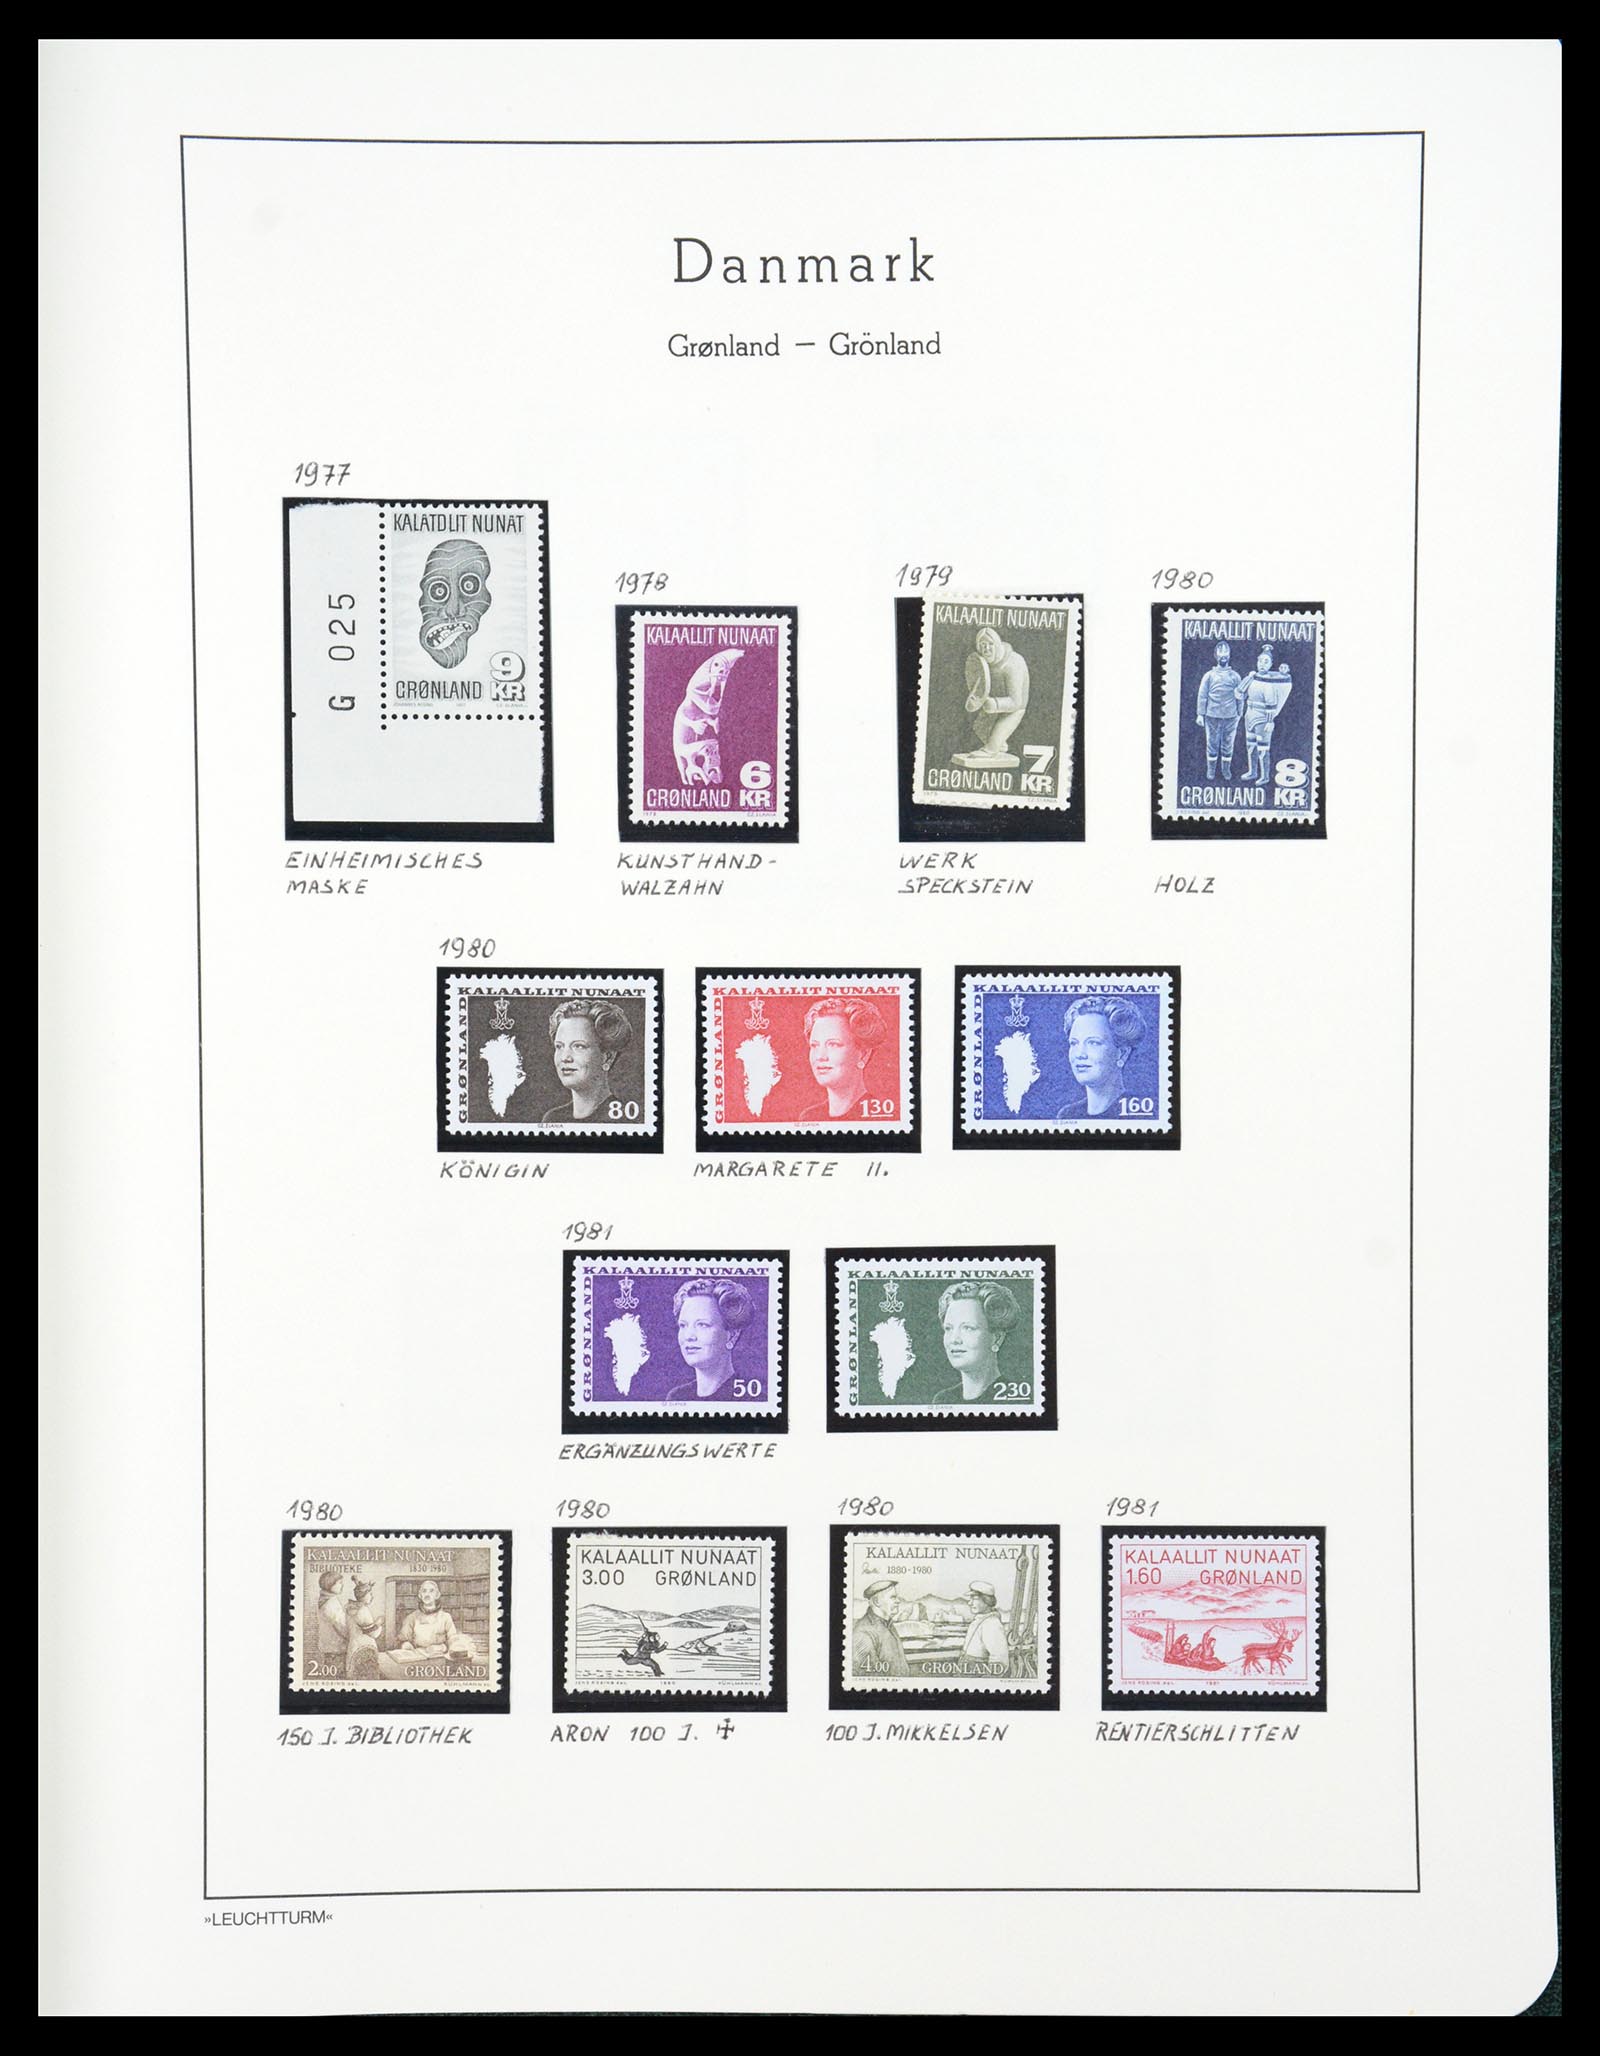 36612 181 - Stamp collection 36612 Denemarken 1851-1990.